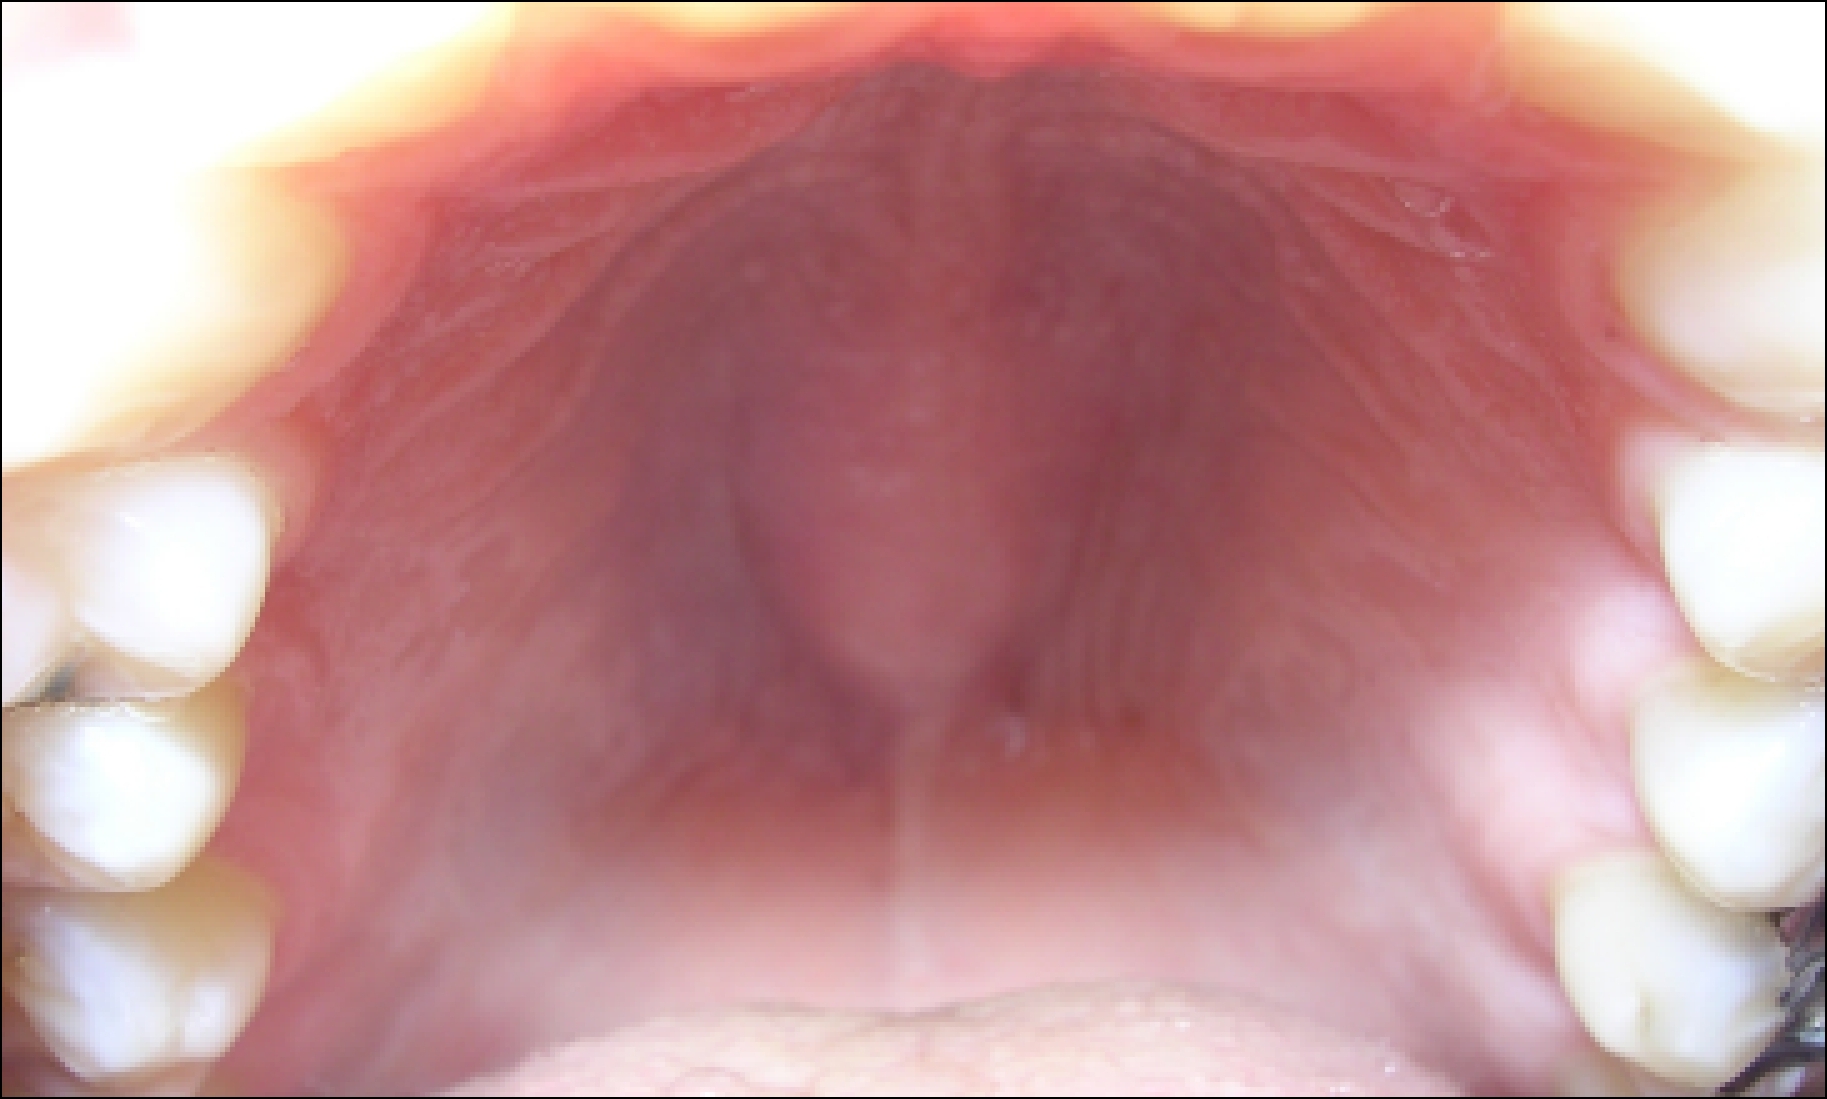 Причины появления полипов во рту